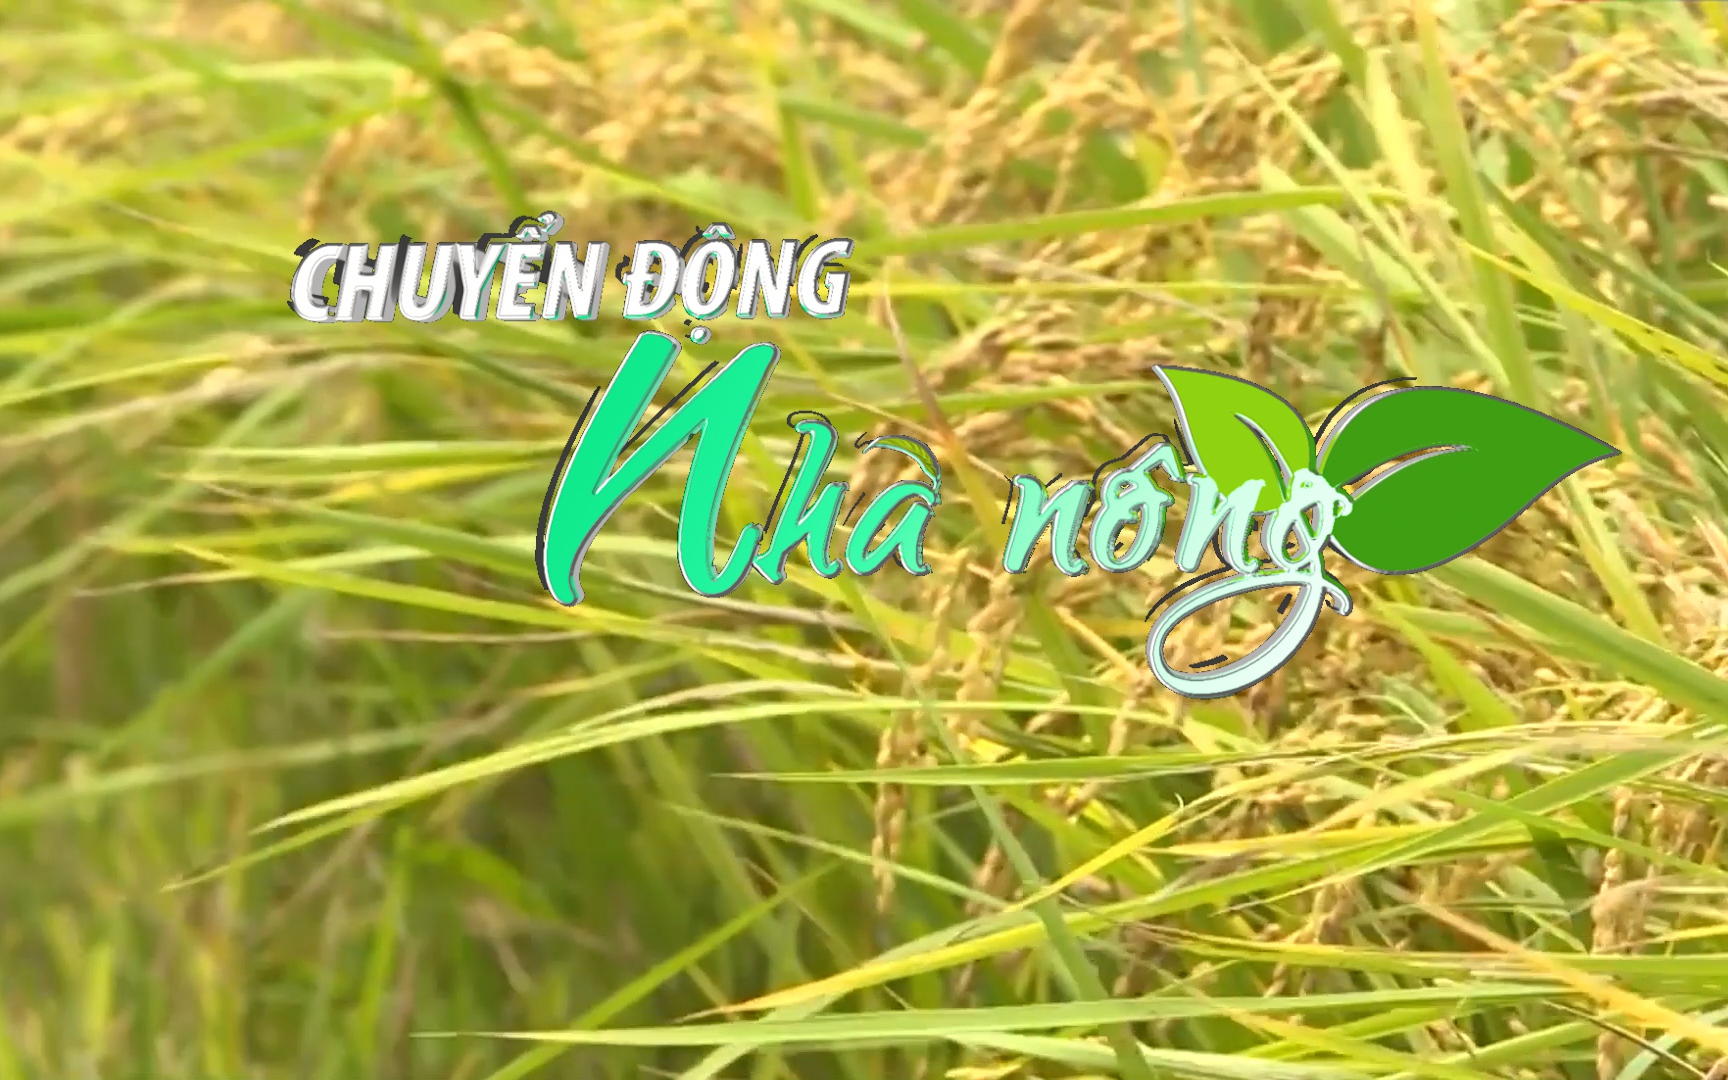 Chuyển động Nhà nông 11/12: Giá gạo Việt Nam tăng tuần thứ ba liên tiếp, lên gần mức cao của 16 tháng